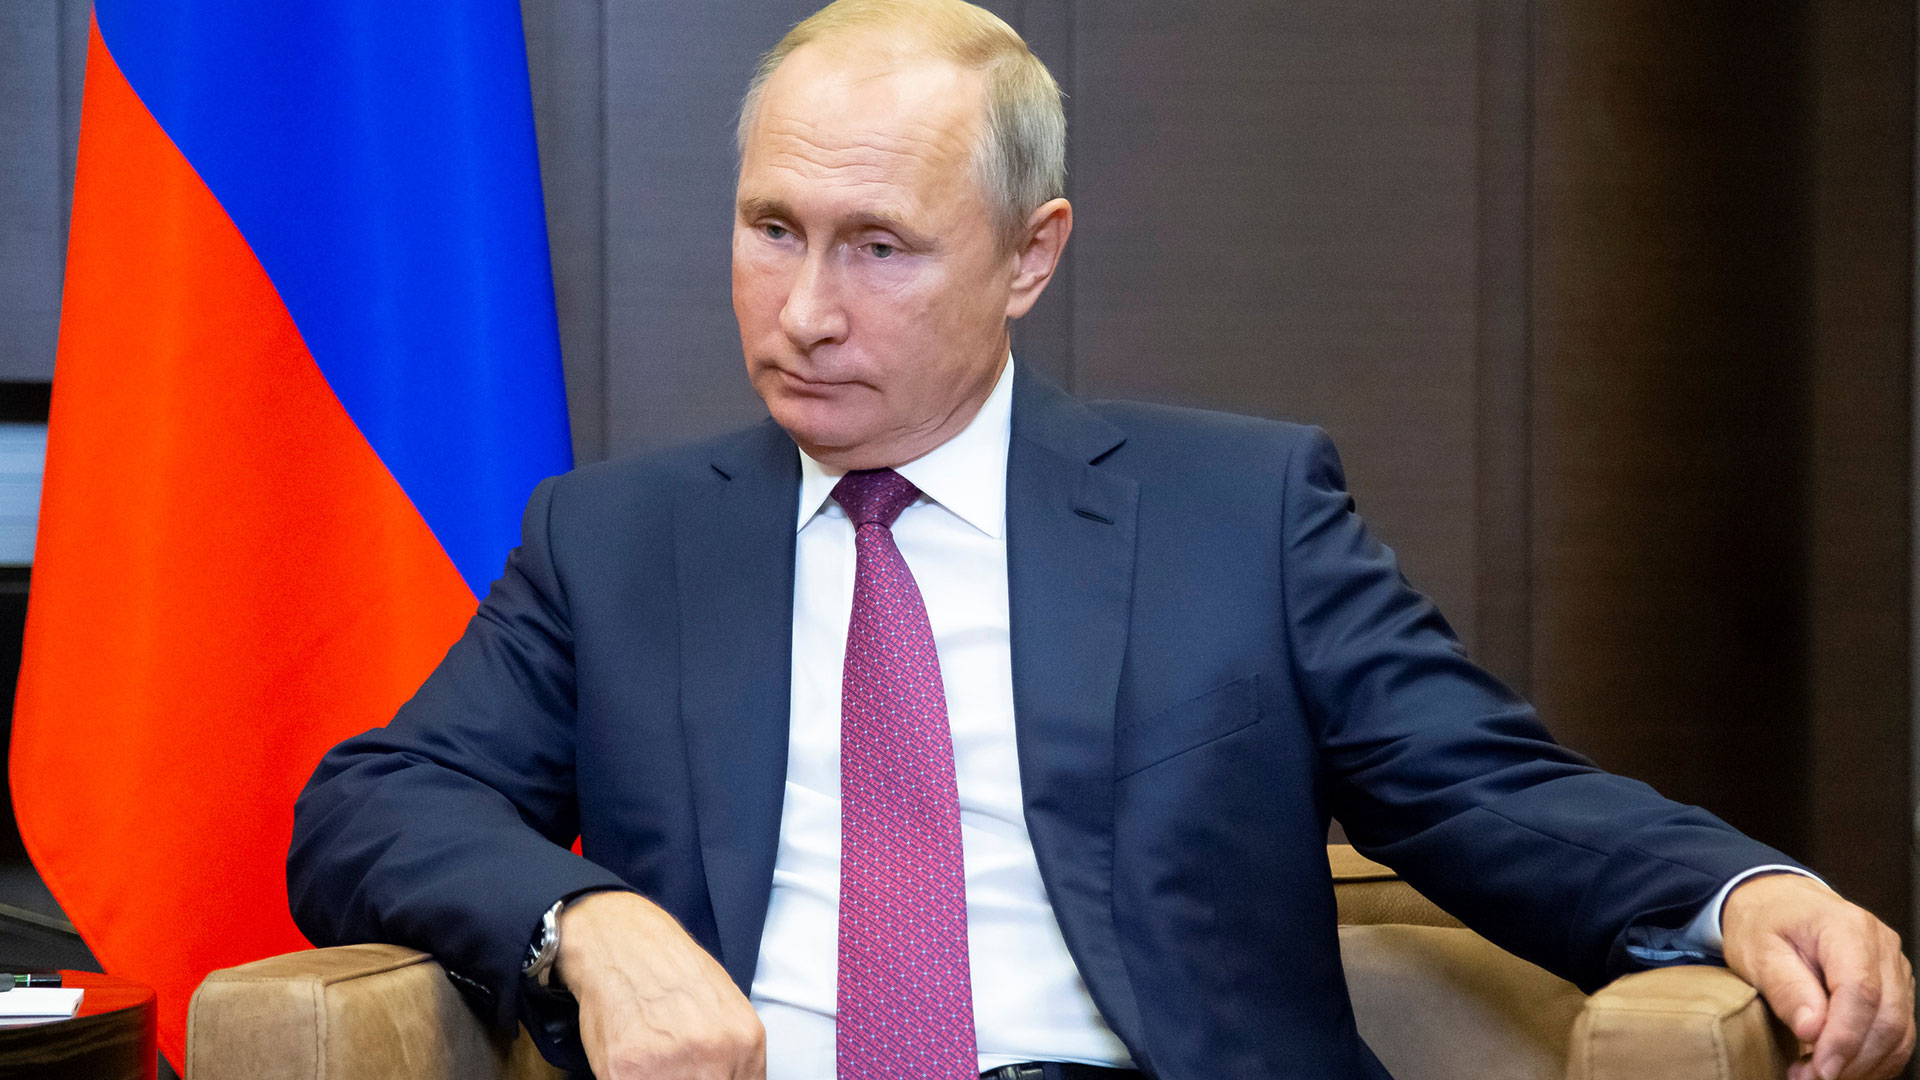 Los opositores al presidente ruso Vladimir Putin en el exterior suelen ser acosados mediante los mecanismos de Interpol  (Reuters)